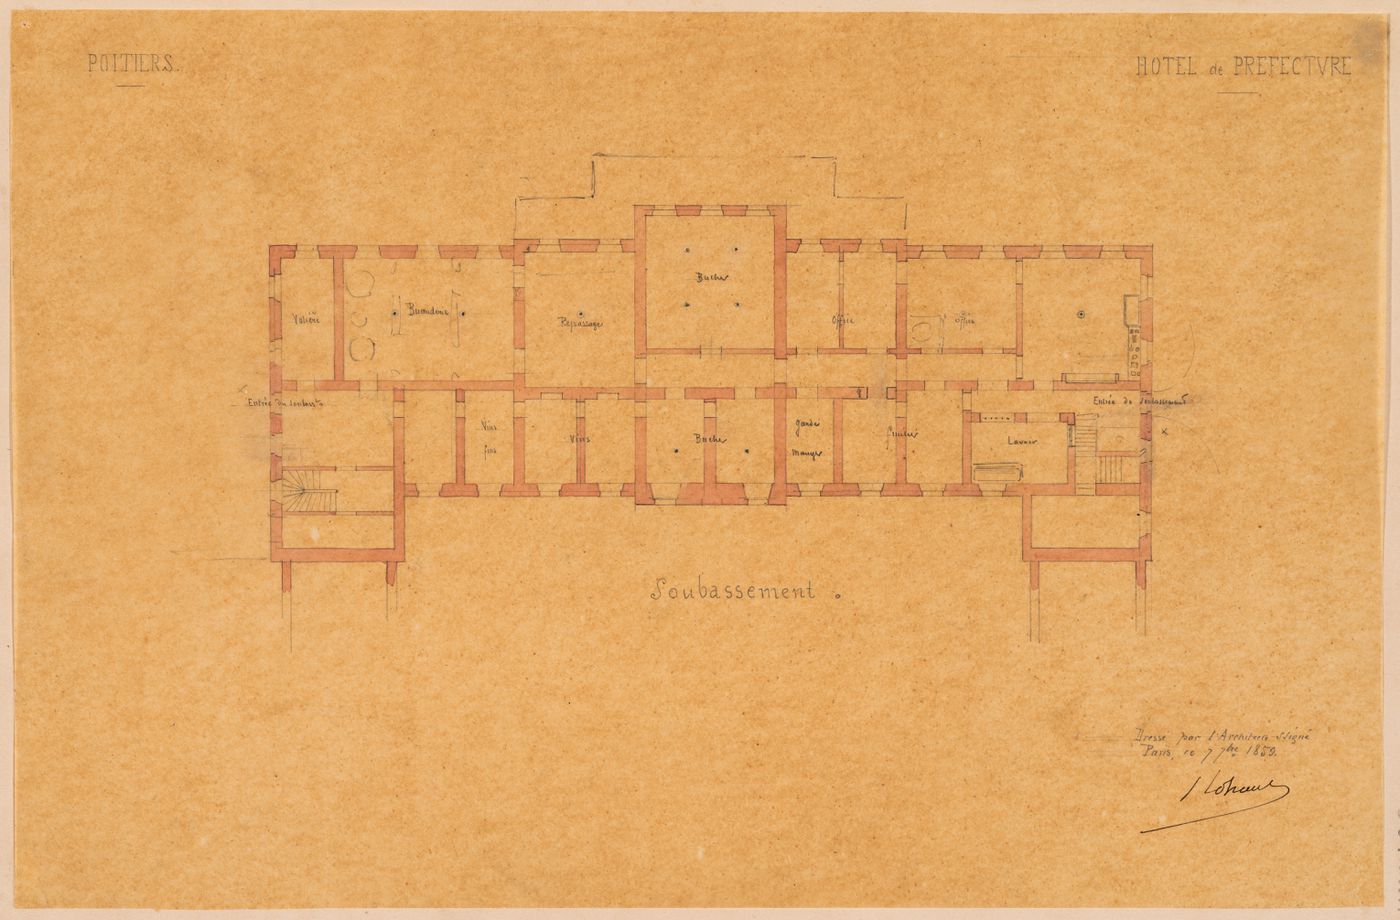 Project for a Hôtel de préfecture, Poitiers: Plan for the "soubassement" for the Hôtel du Préfet